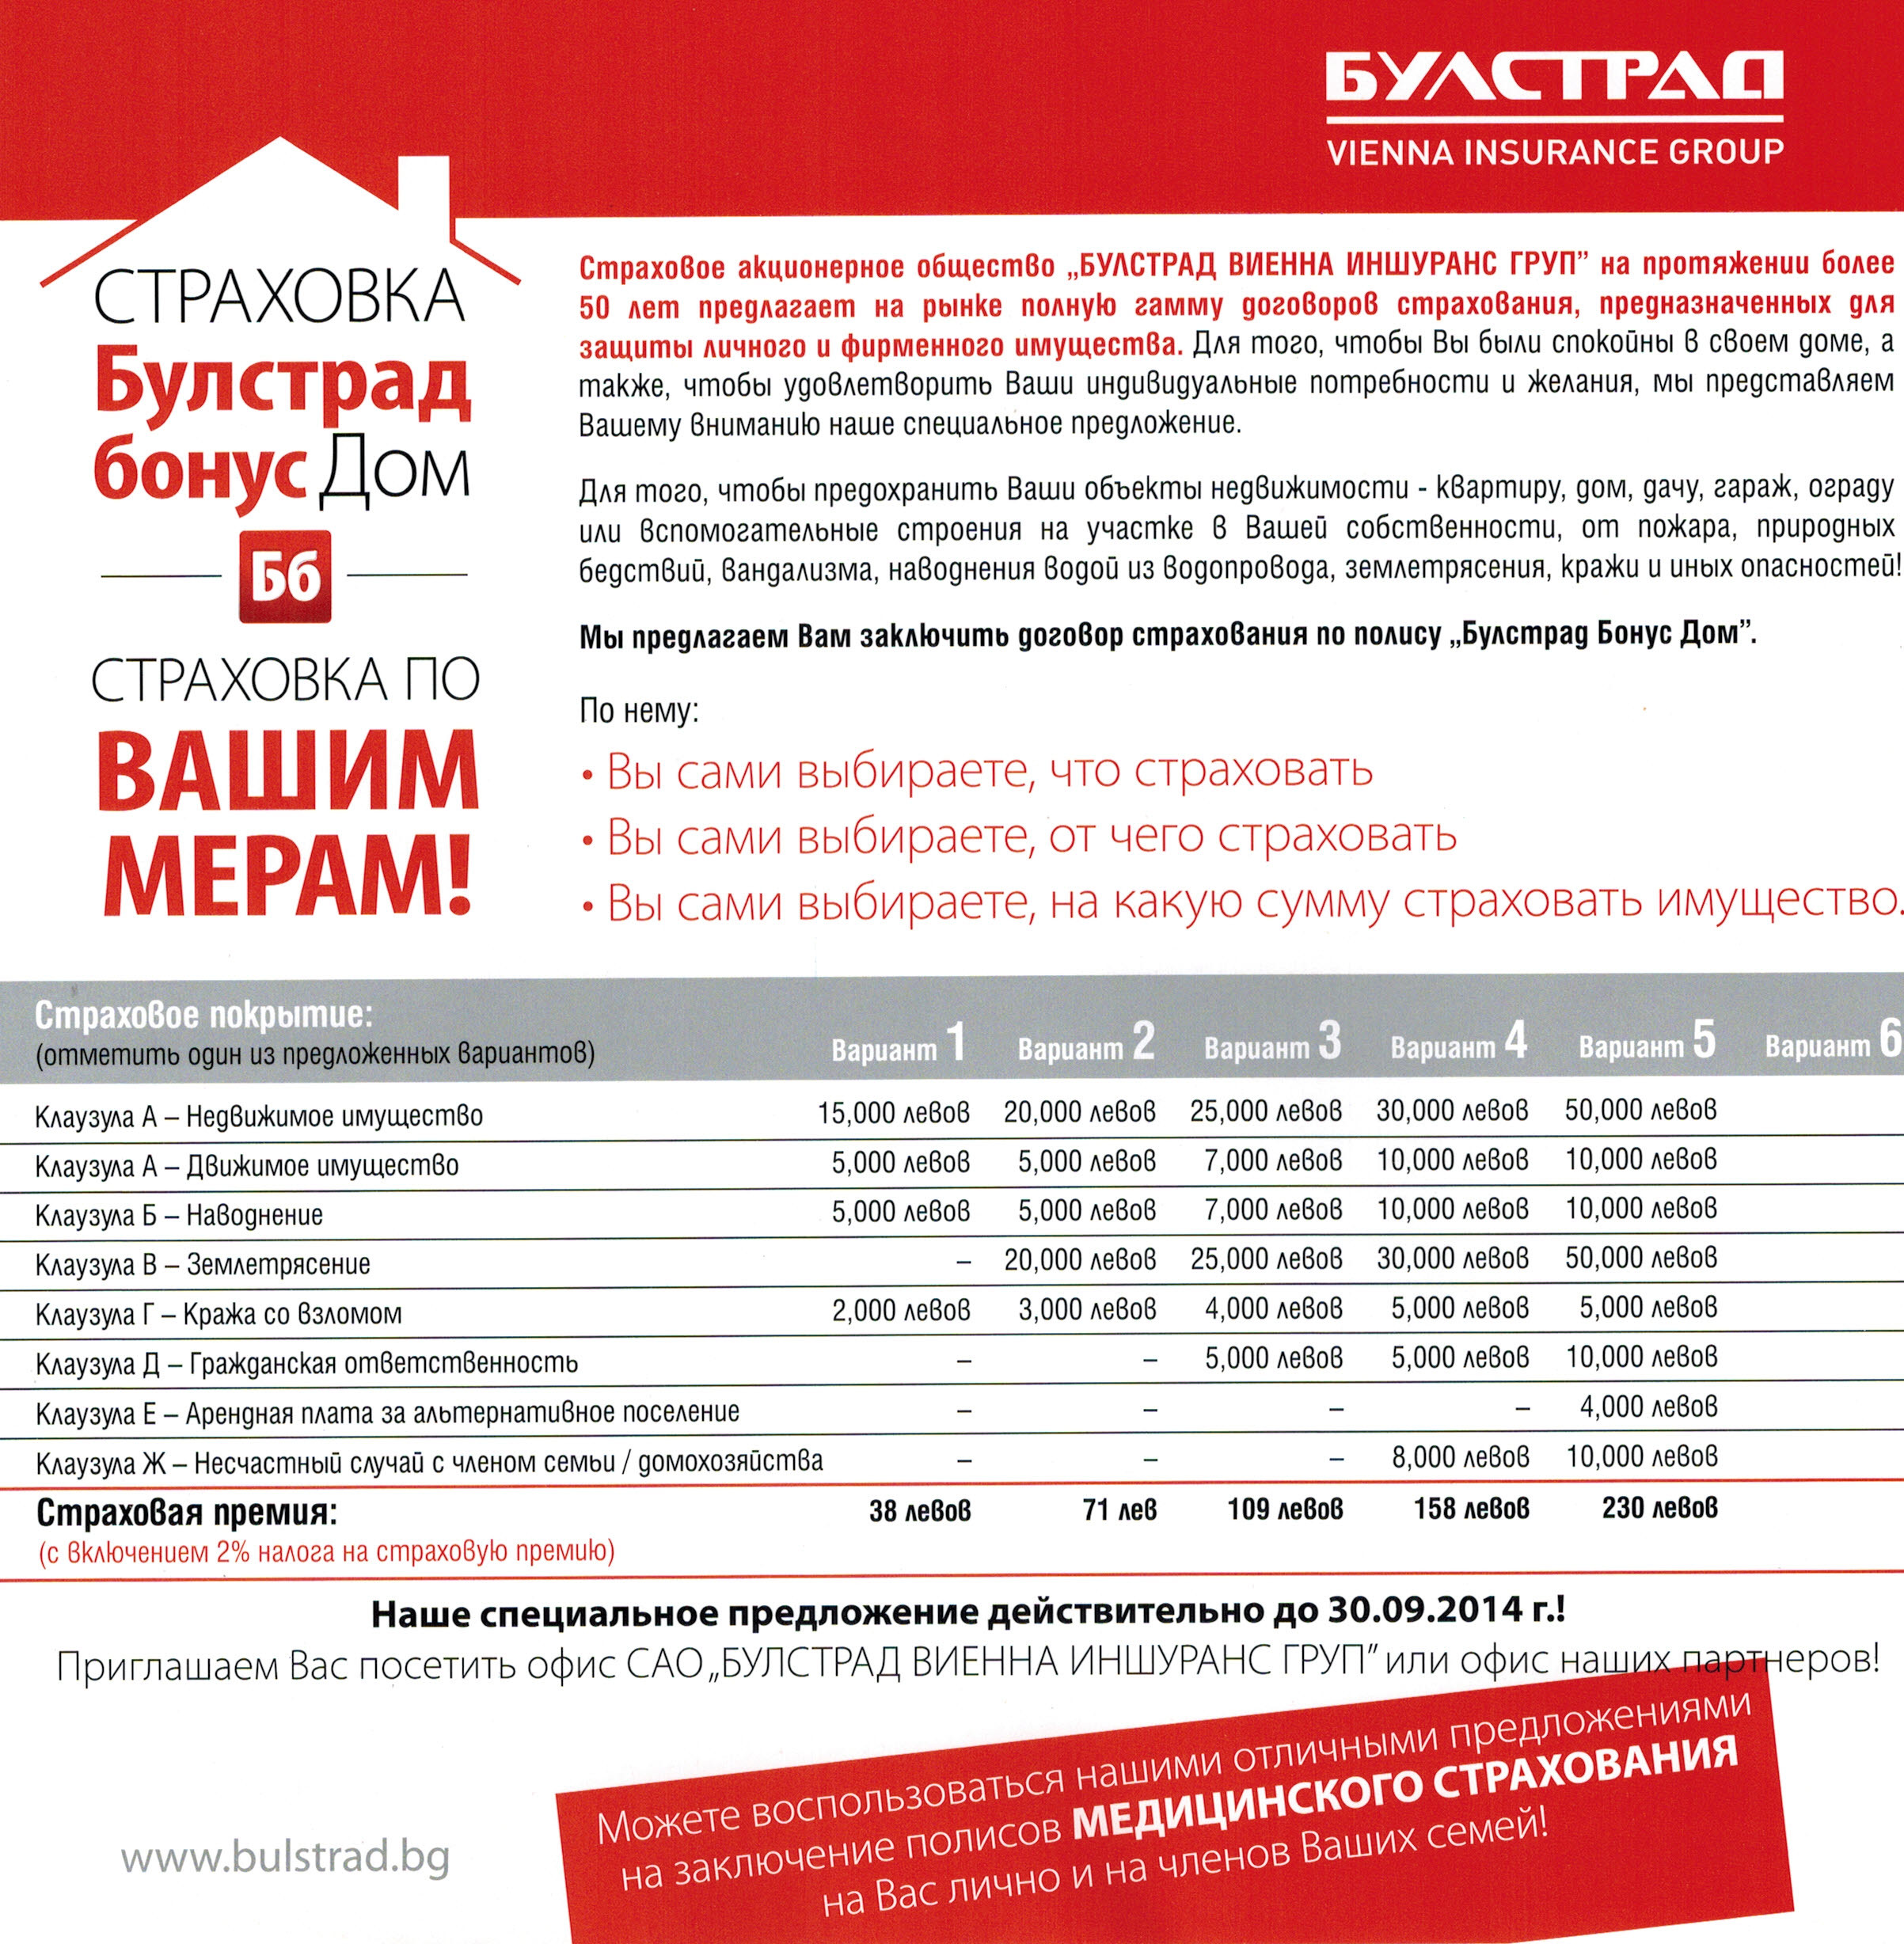 Страхование недвижимости в Болгарии